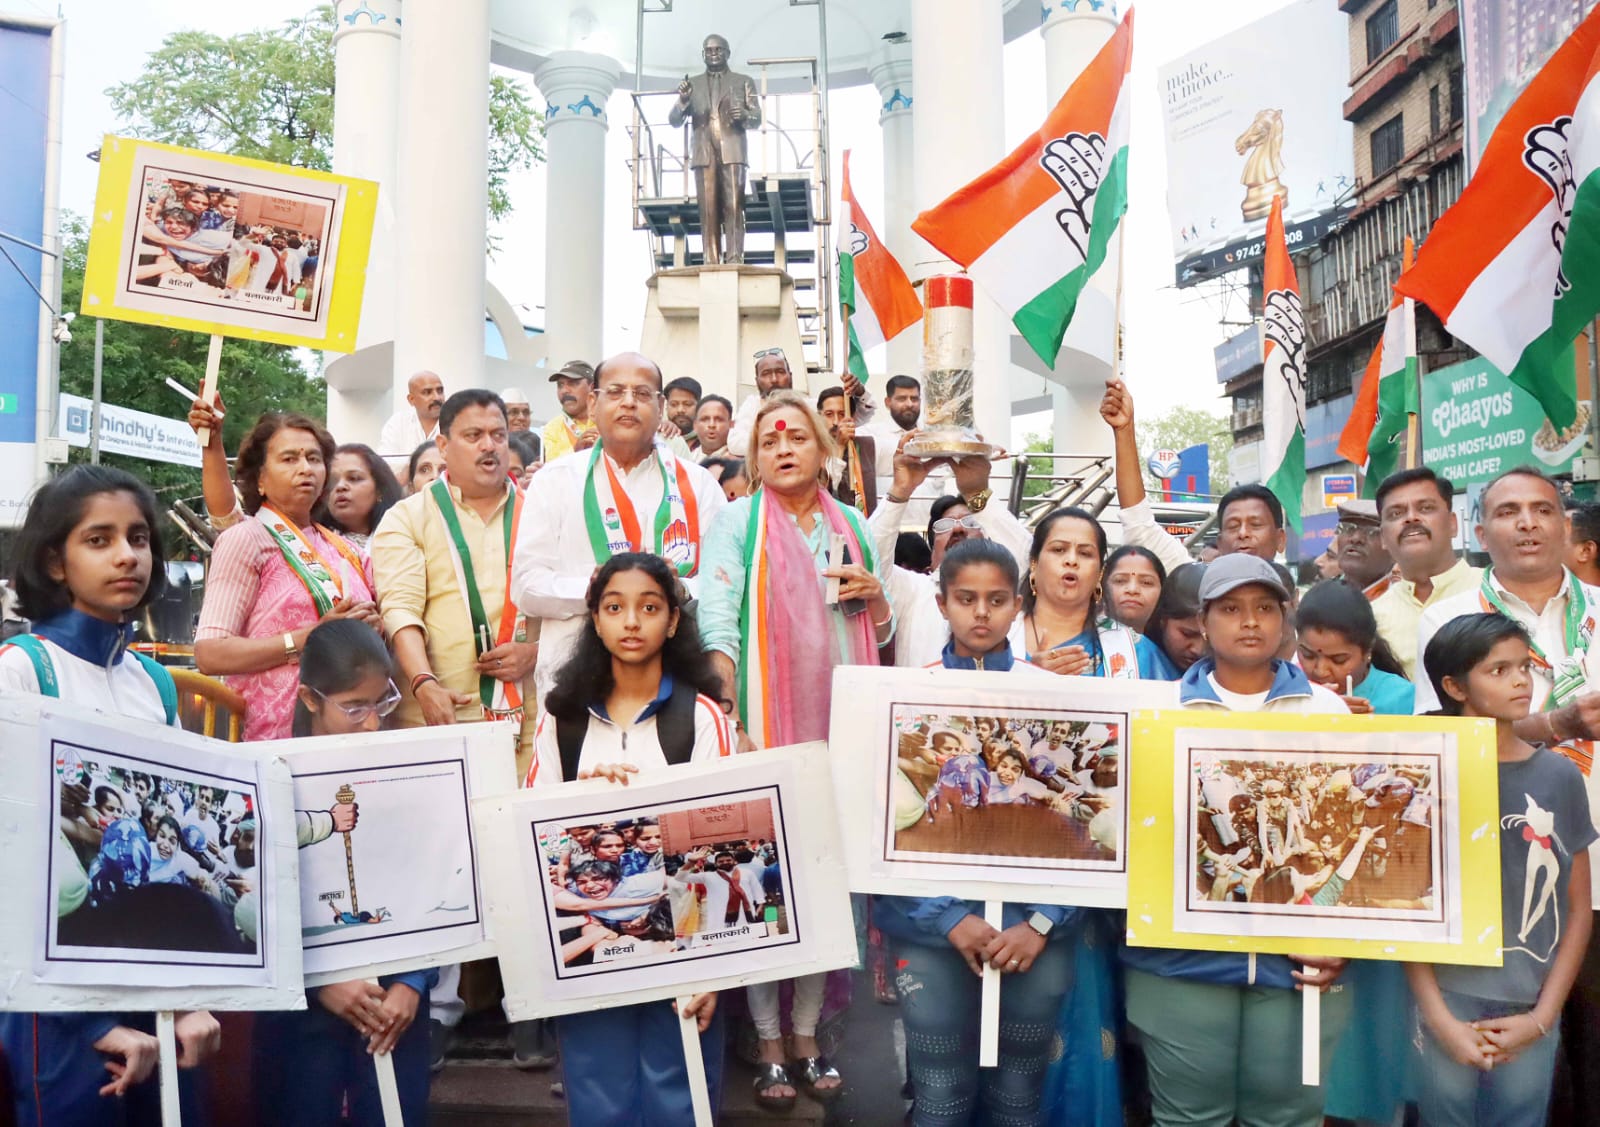 Pune Congress candle march | मोदी सरकार च्या विरोधात पुणे काँग्रेस तर्फे आक्रोश रैली व कँडेल मार्च 